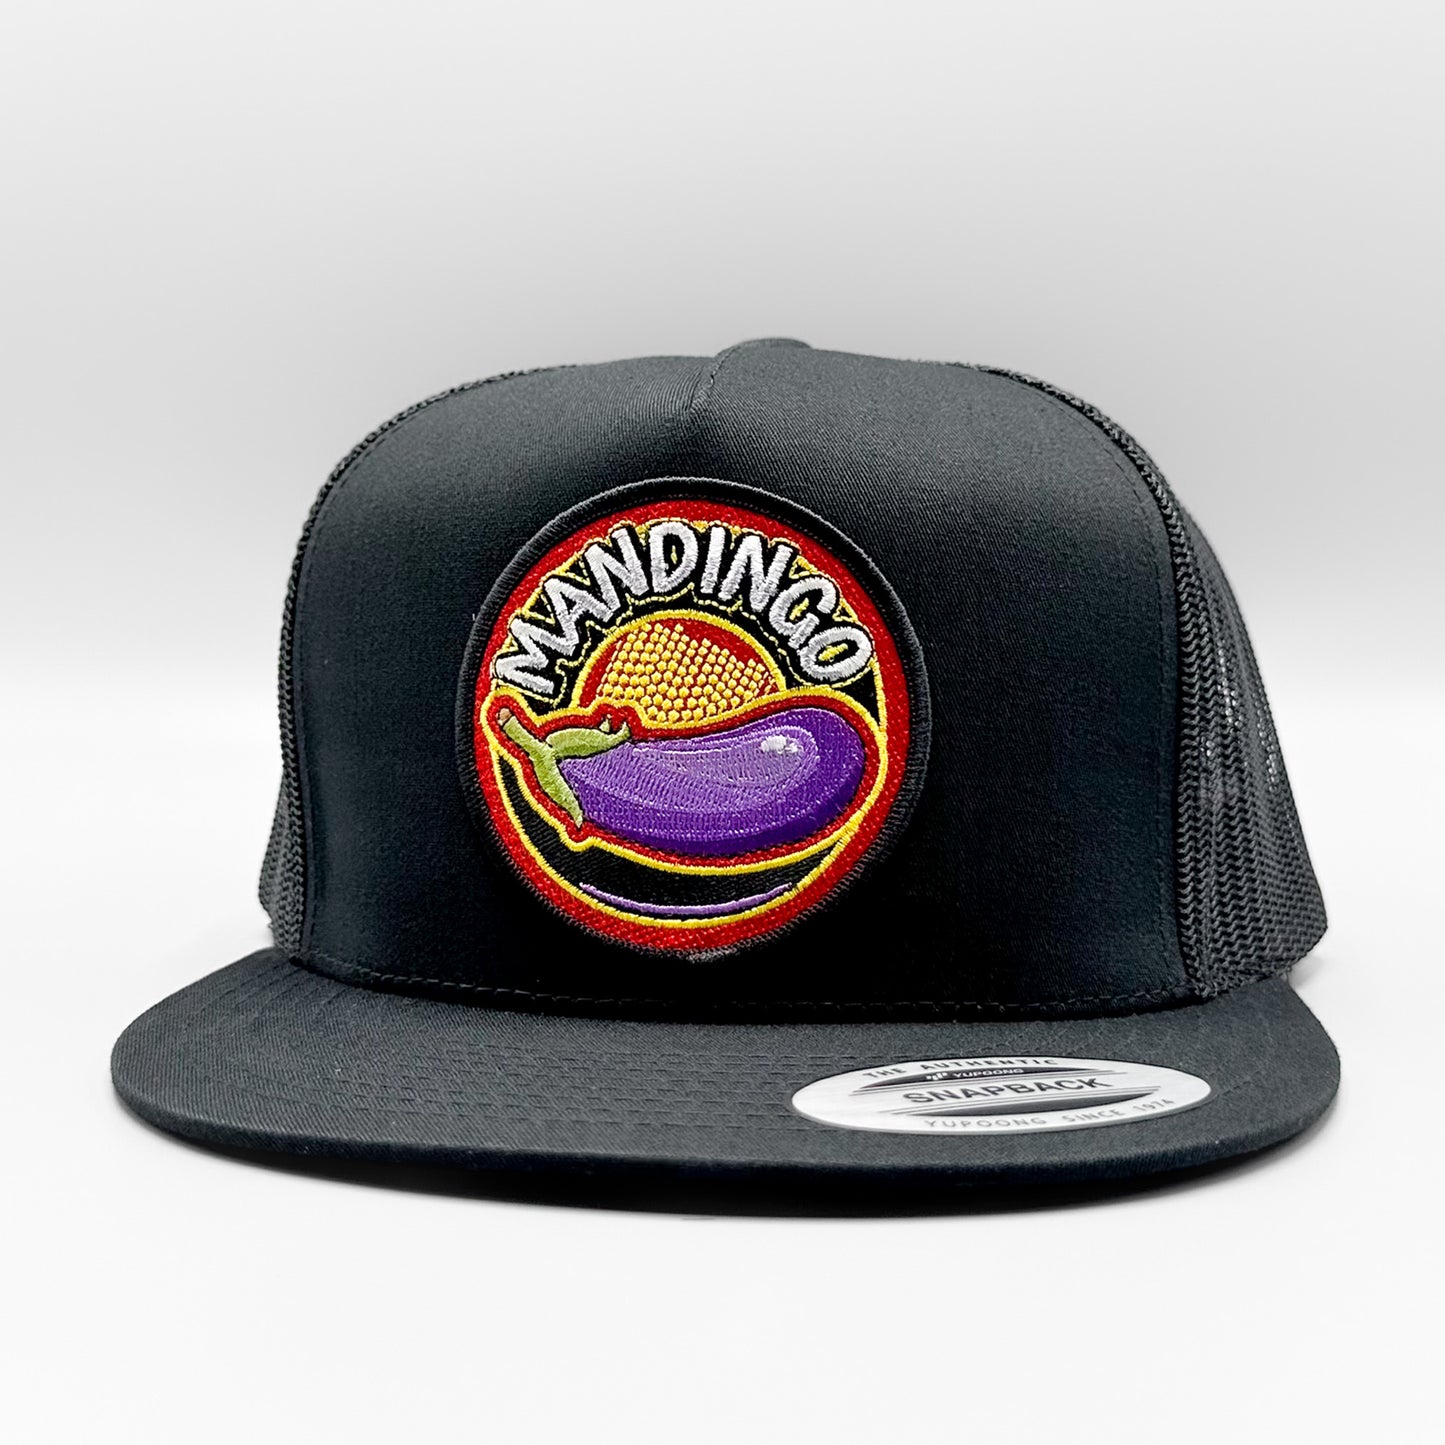 Mandingo Funny Trucker Hat